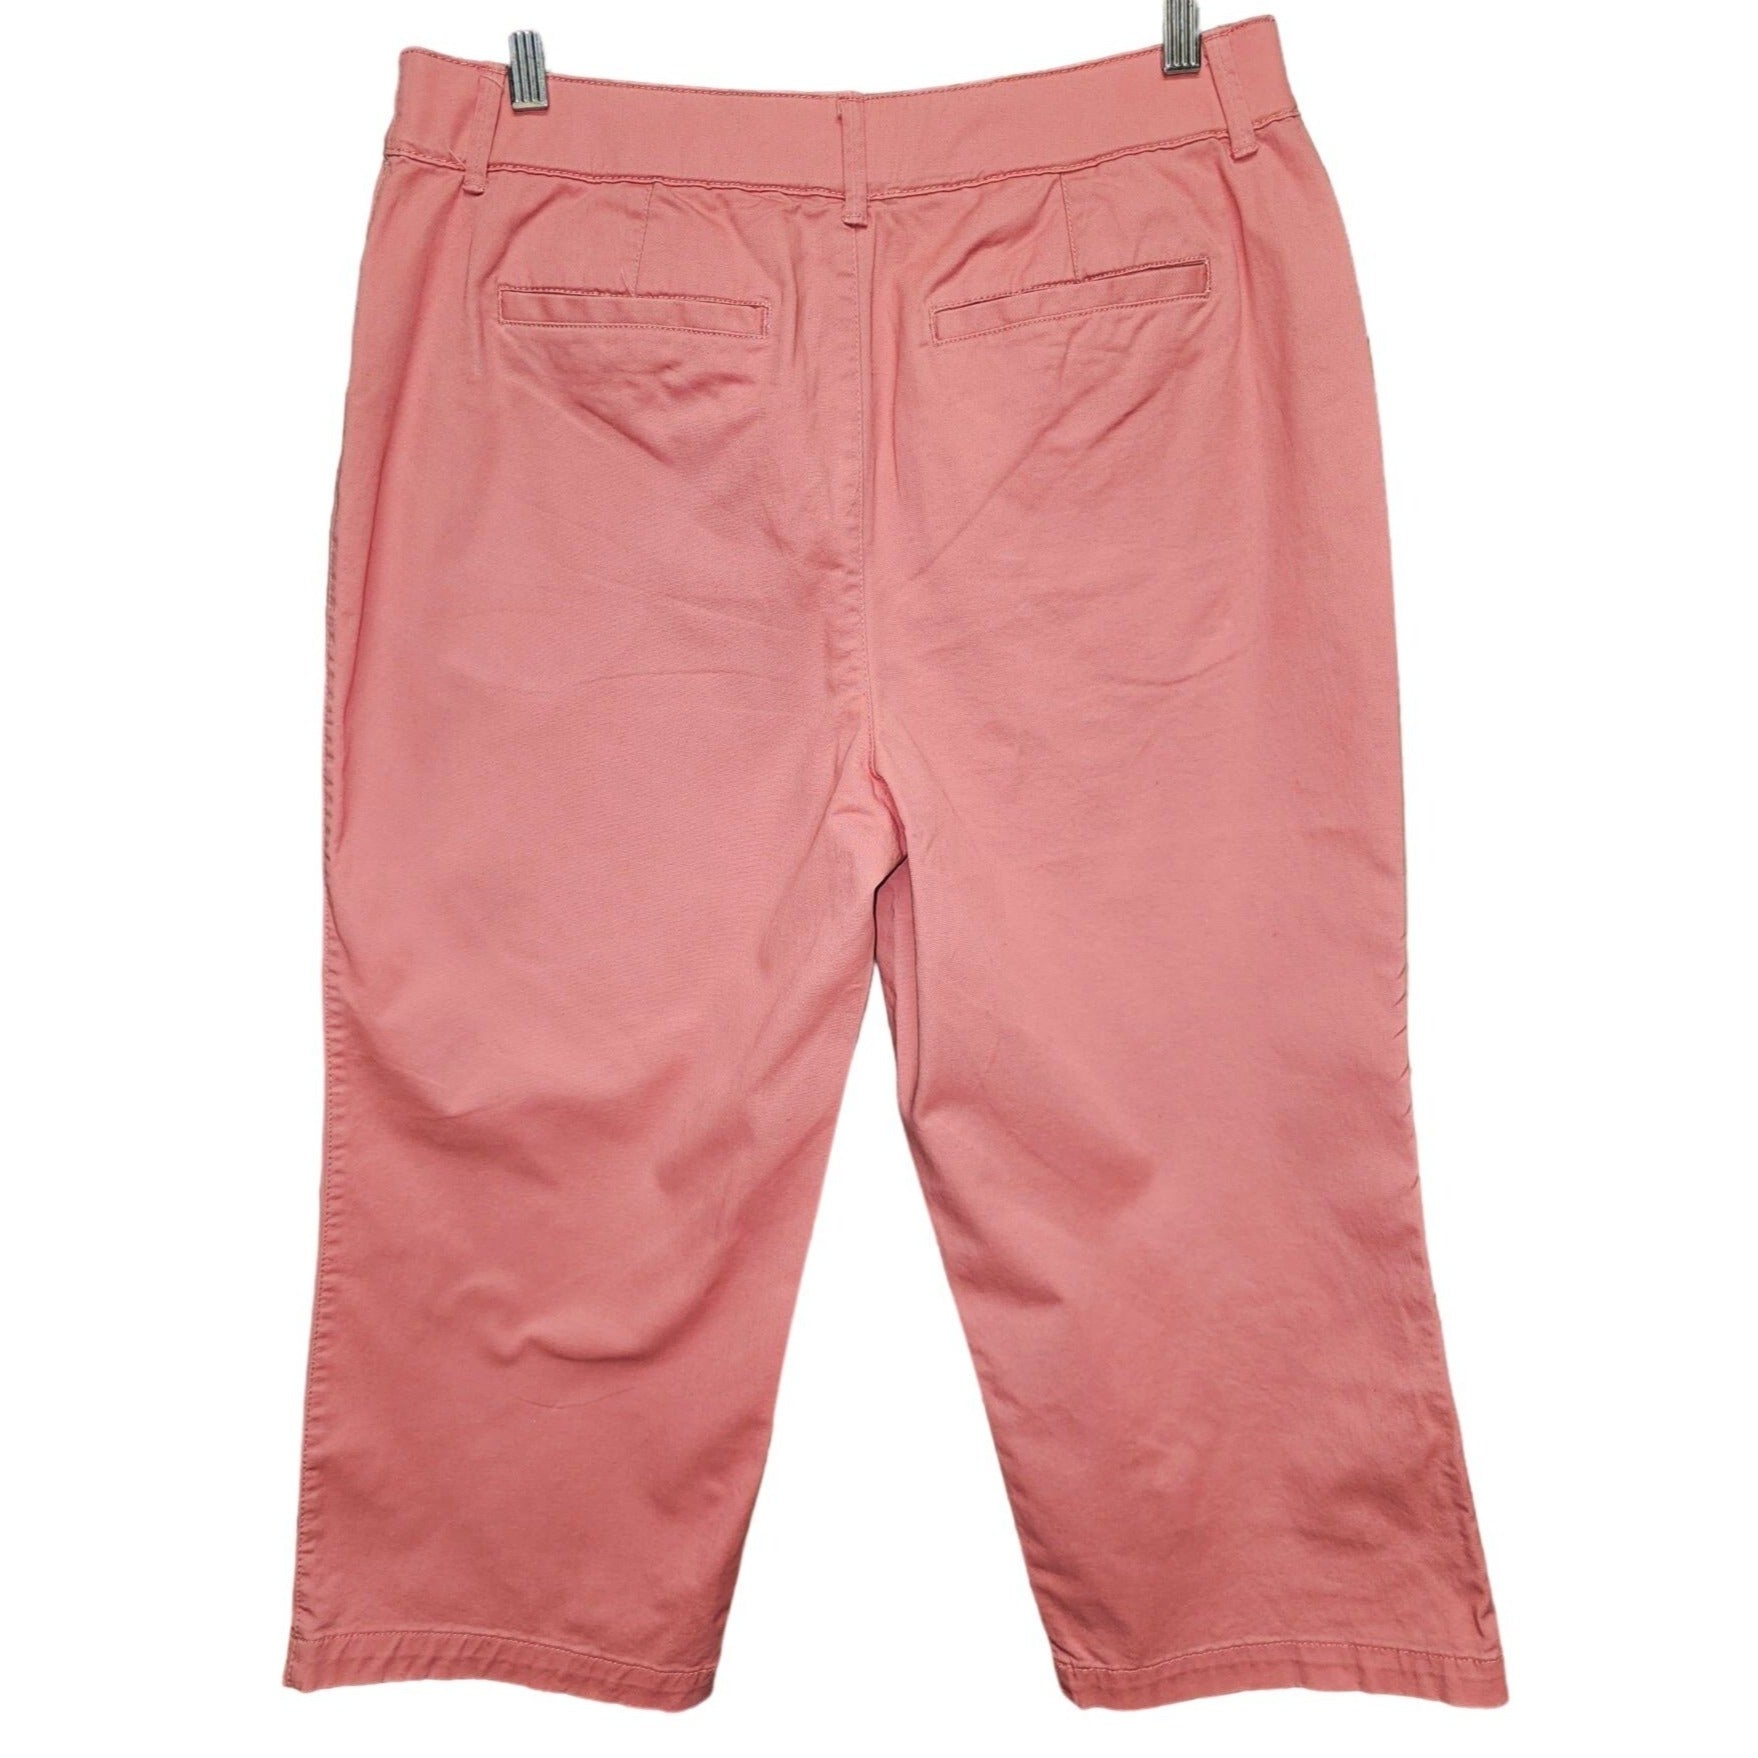 Croft & Barrow Classic Fit Coral Color, Women's Capri Pants, Size 10